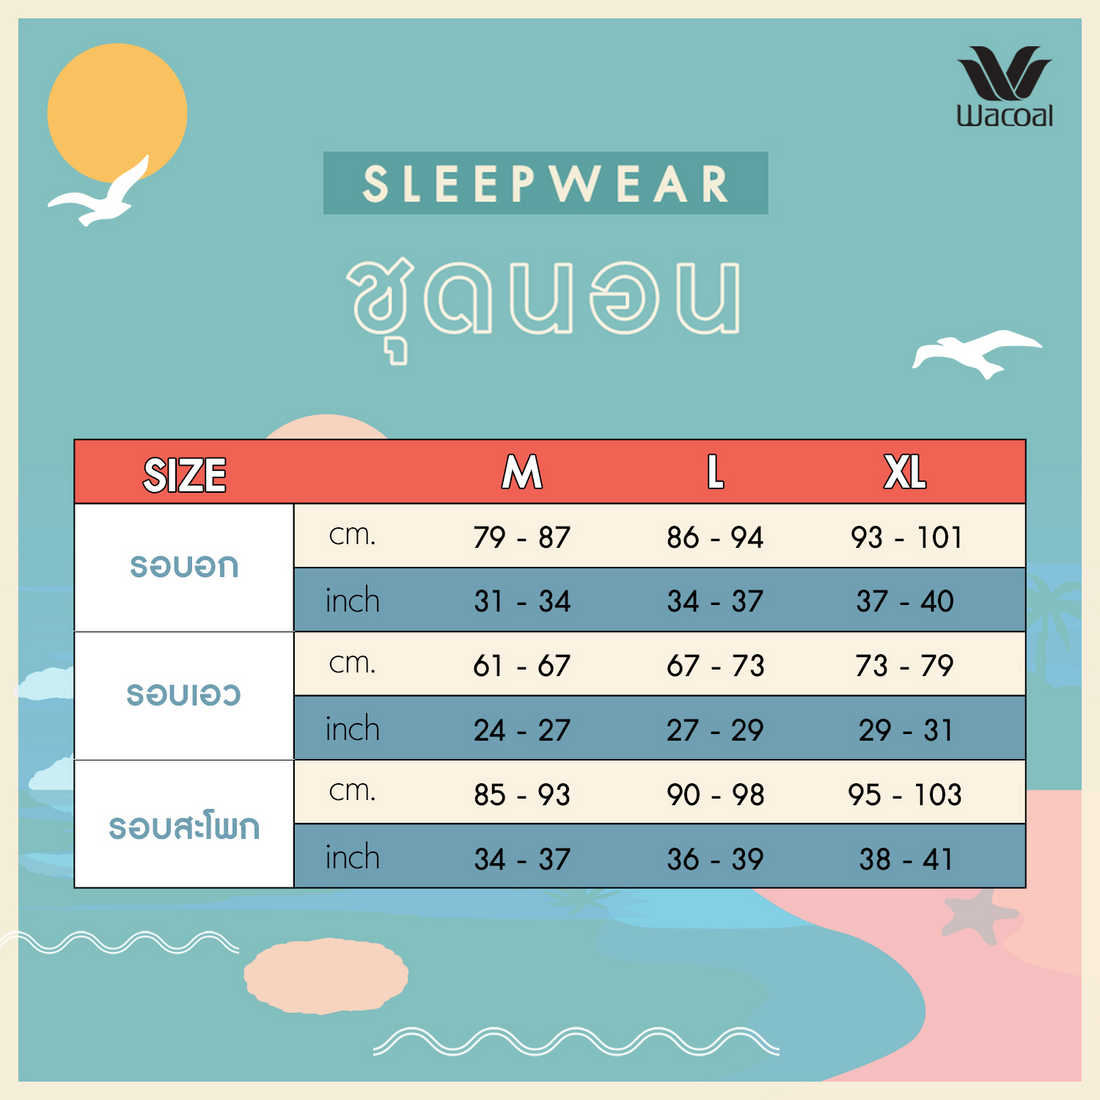 Wacoal Sleep Wear ชุดนอนผ้า Satin Set แขนยาว ขายาว รุ่น WN7E19 สีชมพูอ่อน  (LC)